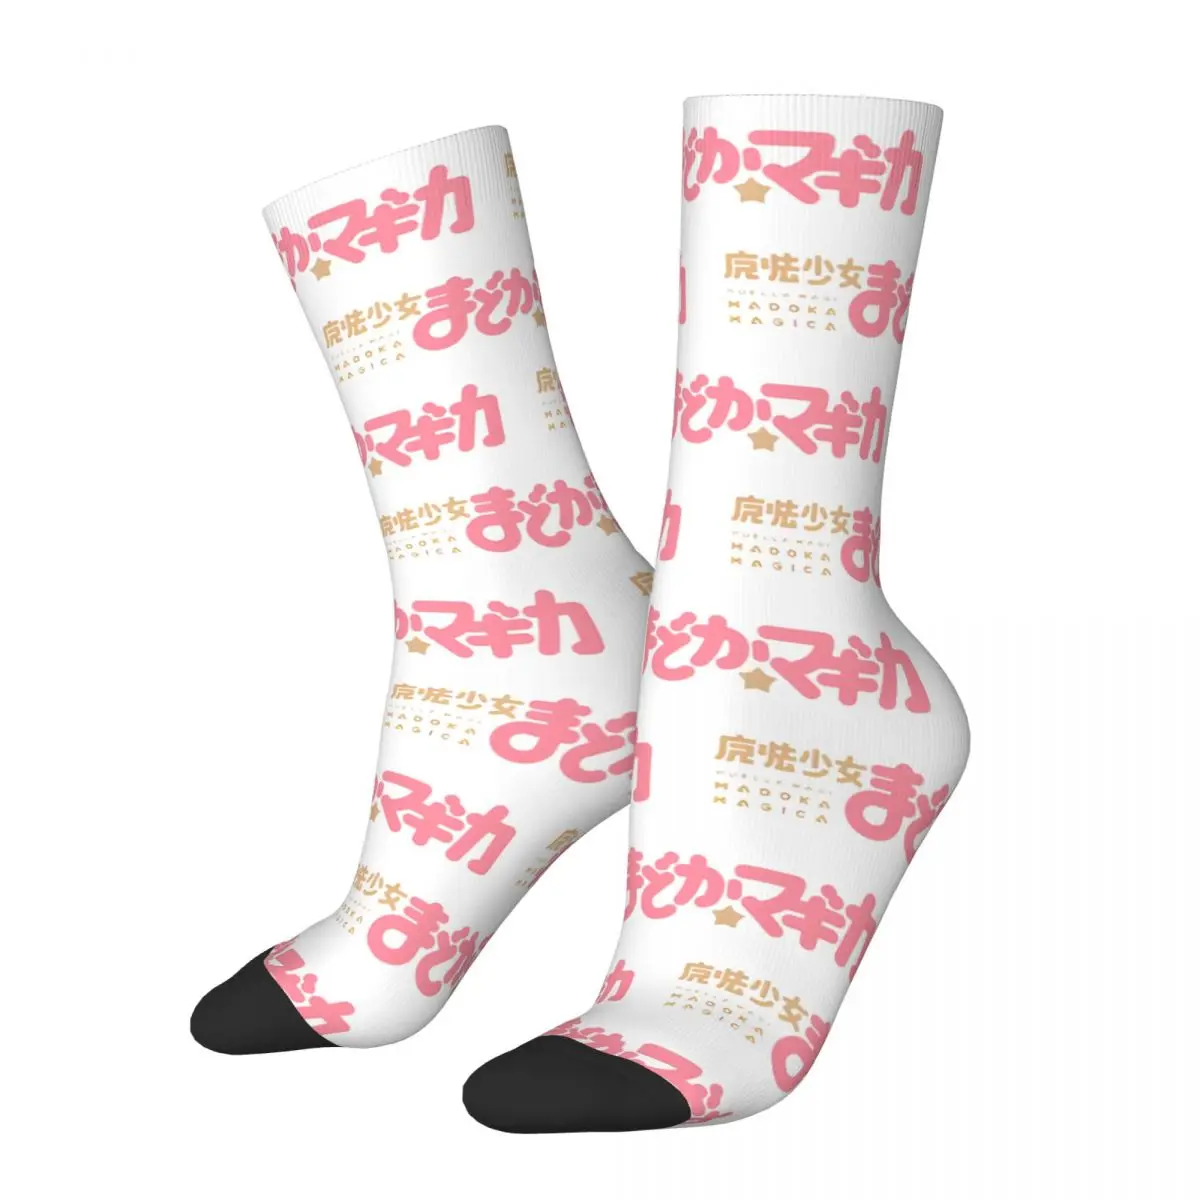 

Harajuku Anime Madoka Magica Design Theme Basketball Socks Stuff All Season Warm Crew Socks Breathable